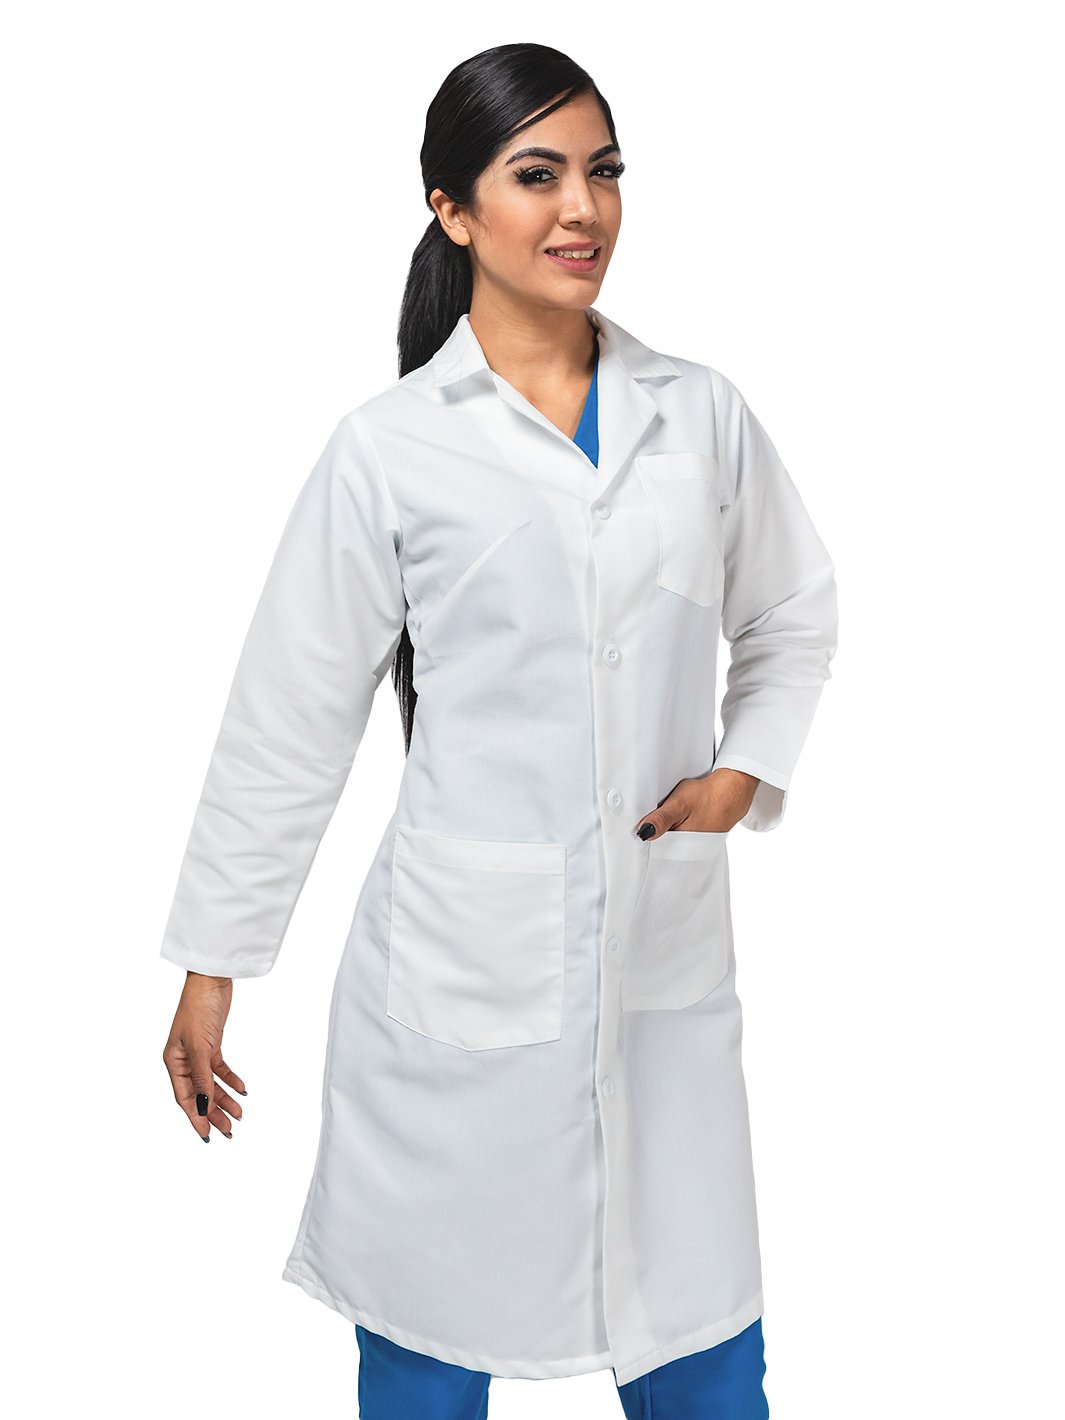 Mujer vistiendo bata blanca de laboratorio para médico que cuenta con cuatro botones, tres bolsas frontales, y cinto en la espalda